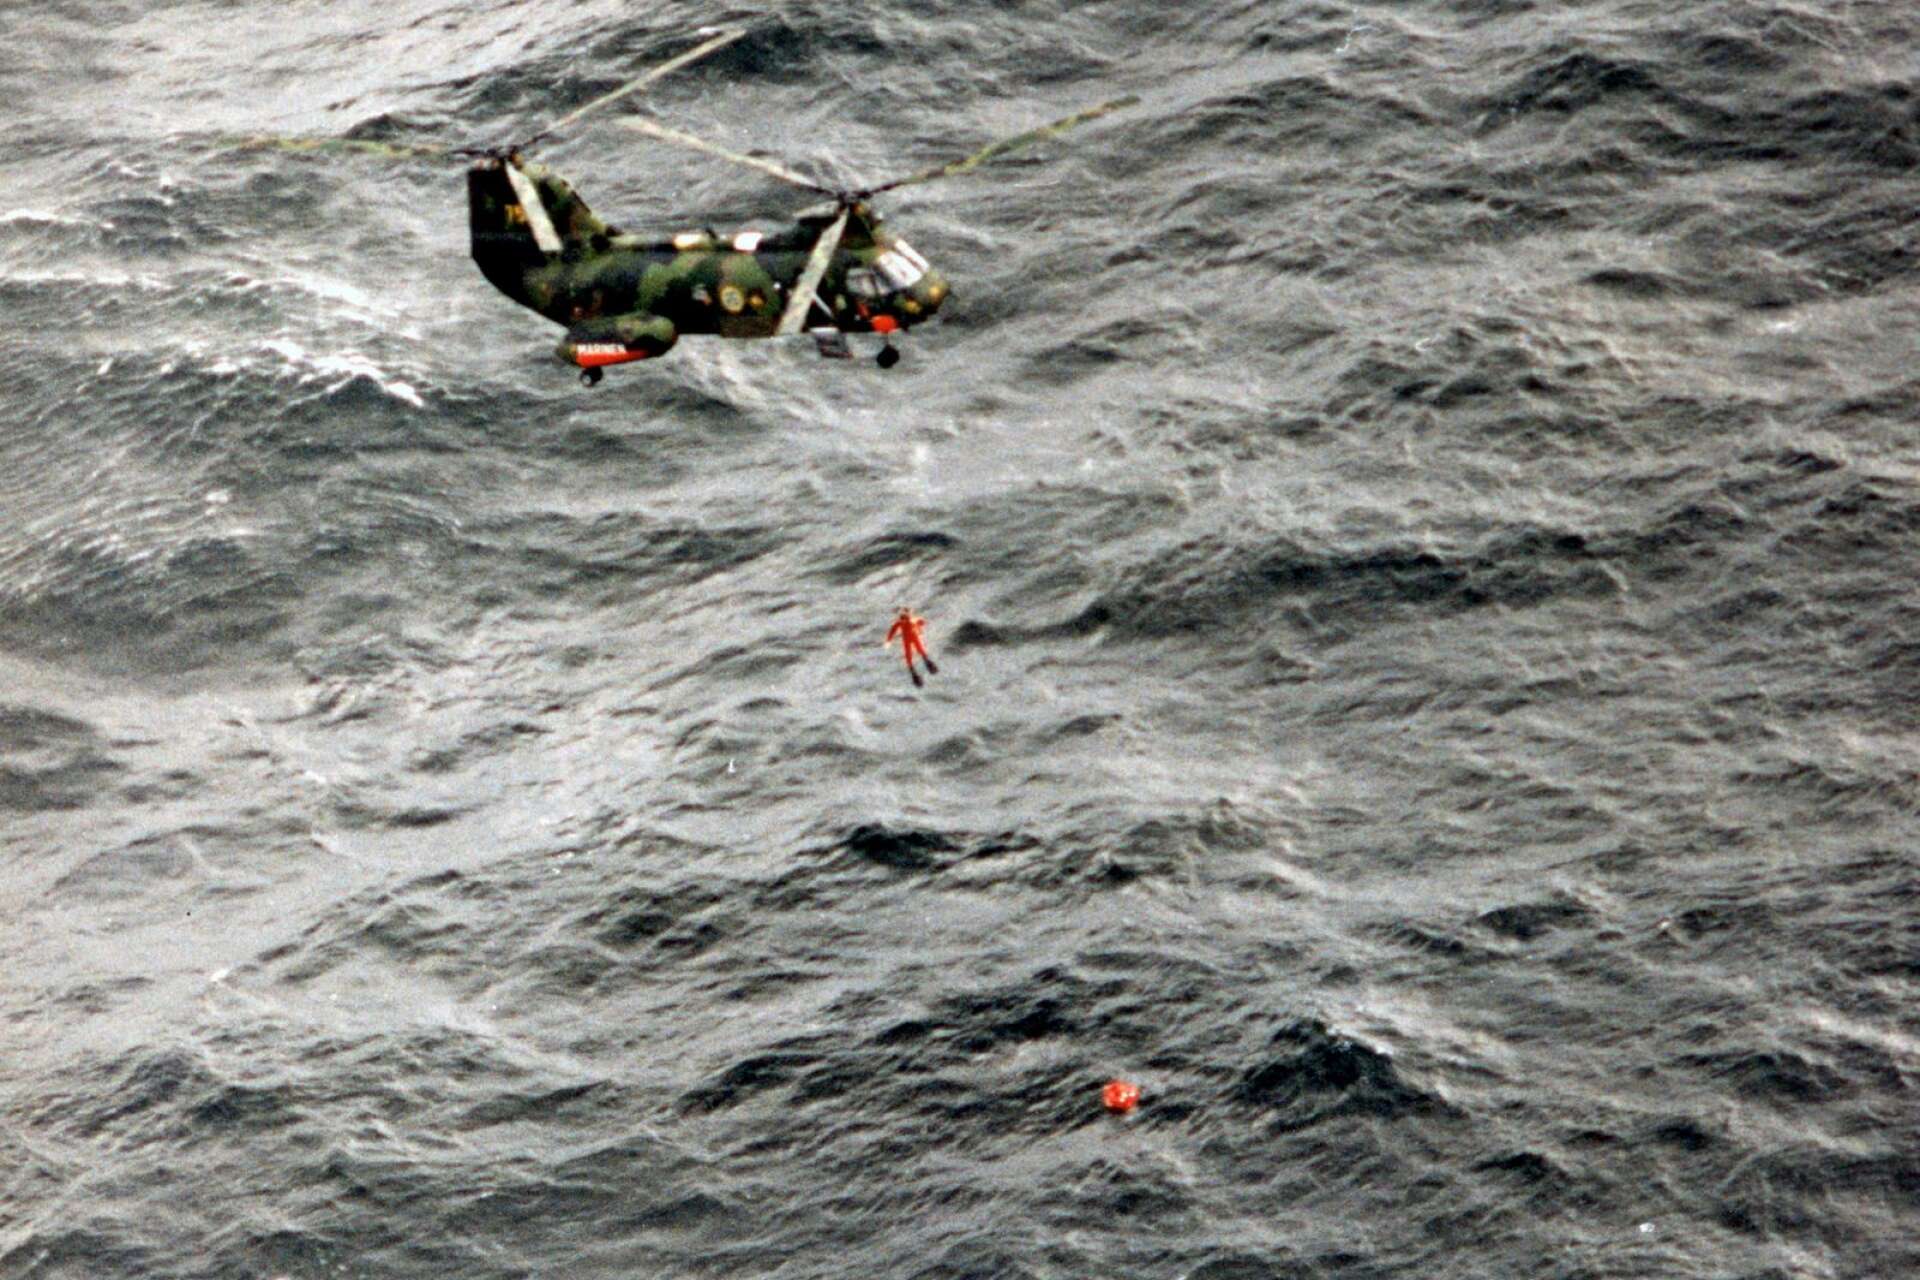 28 september 19940. En ytbärgare från en svensk helikopter på väg ner mot en livräddningsflotte. ”De riskerade sin egen hälsa och liv”, säger Anders Eriksson om ytbärgarnas insats.